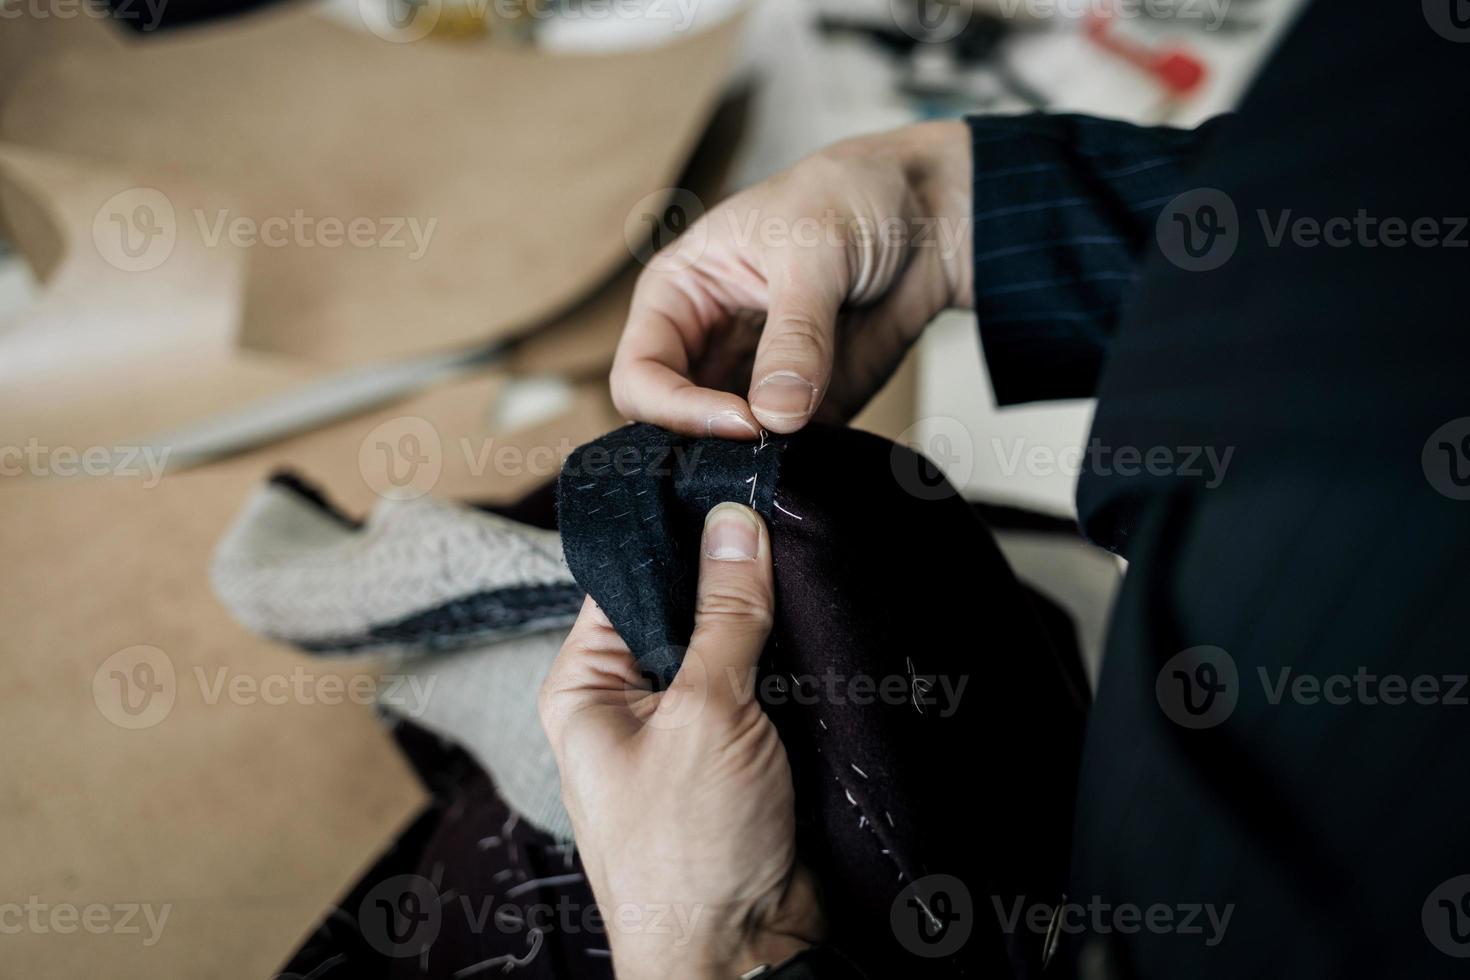 kleermaker op naaien met naald foto